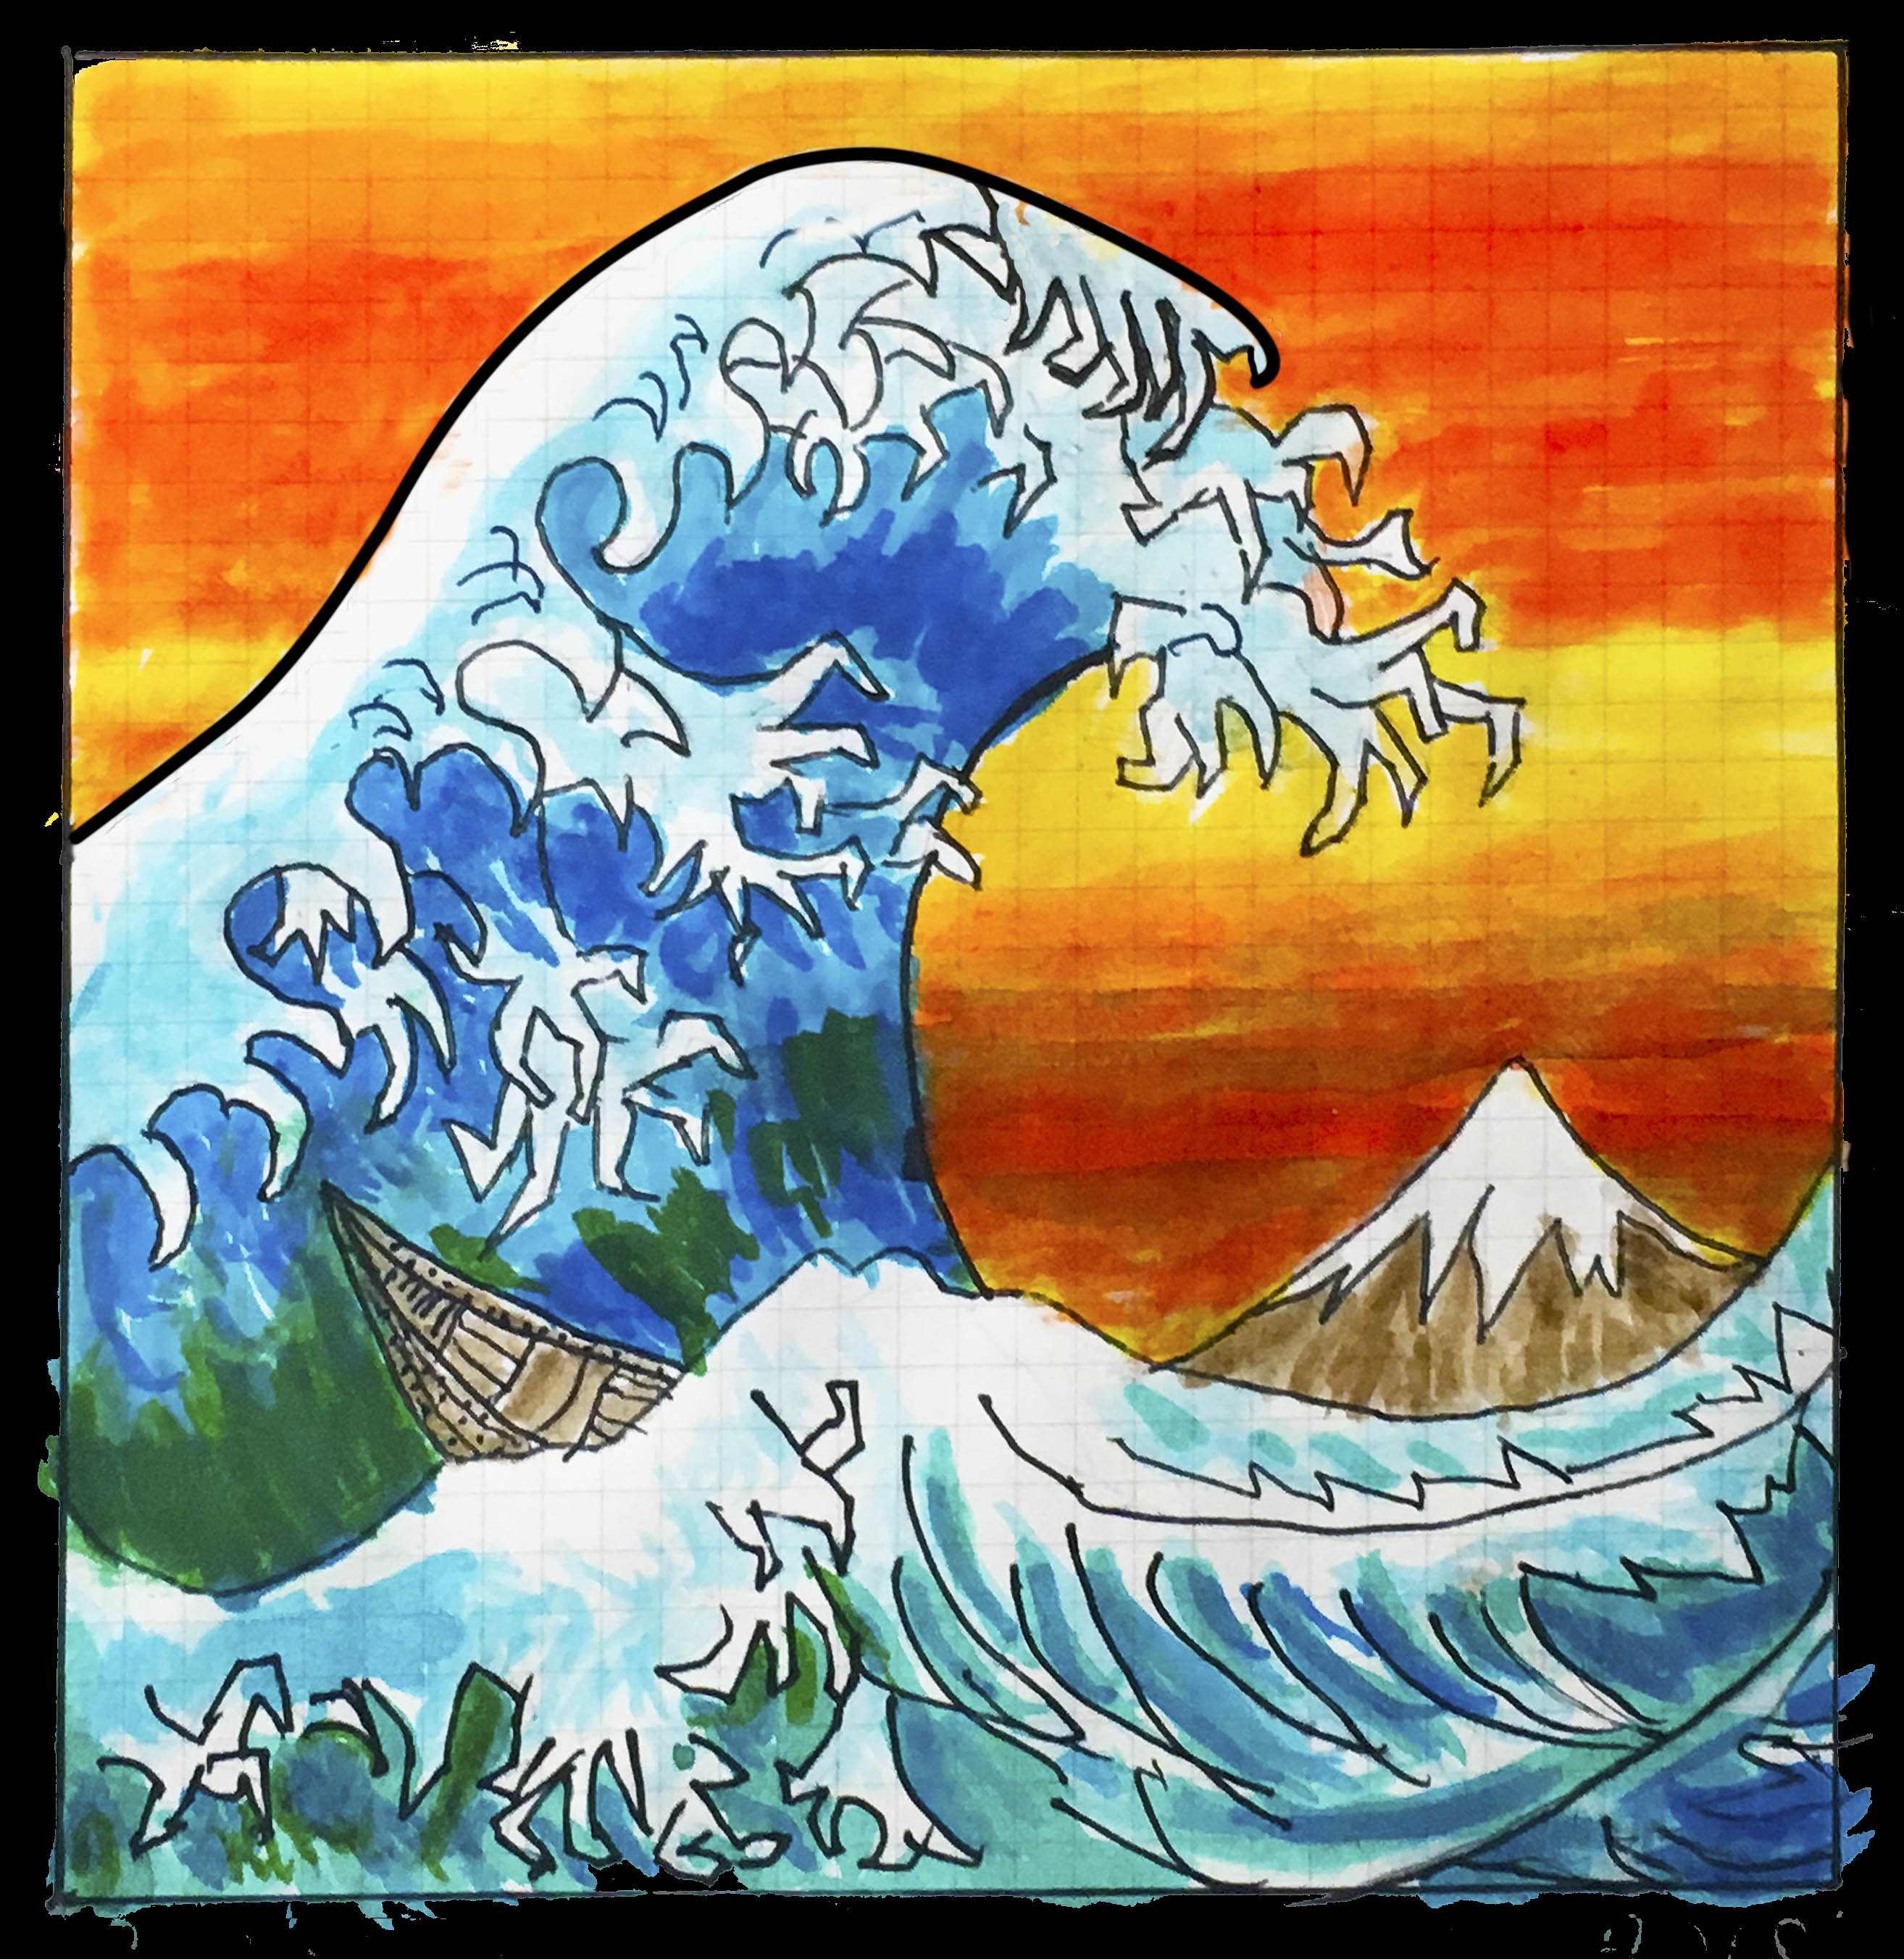 After Hokusai